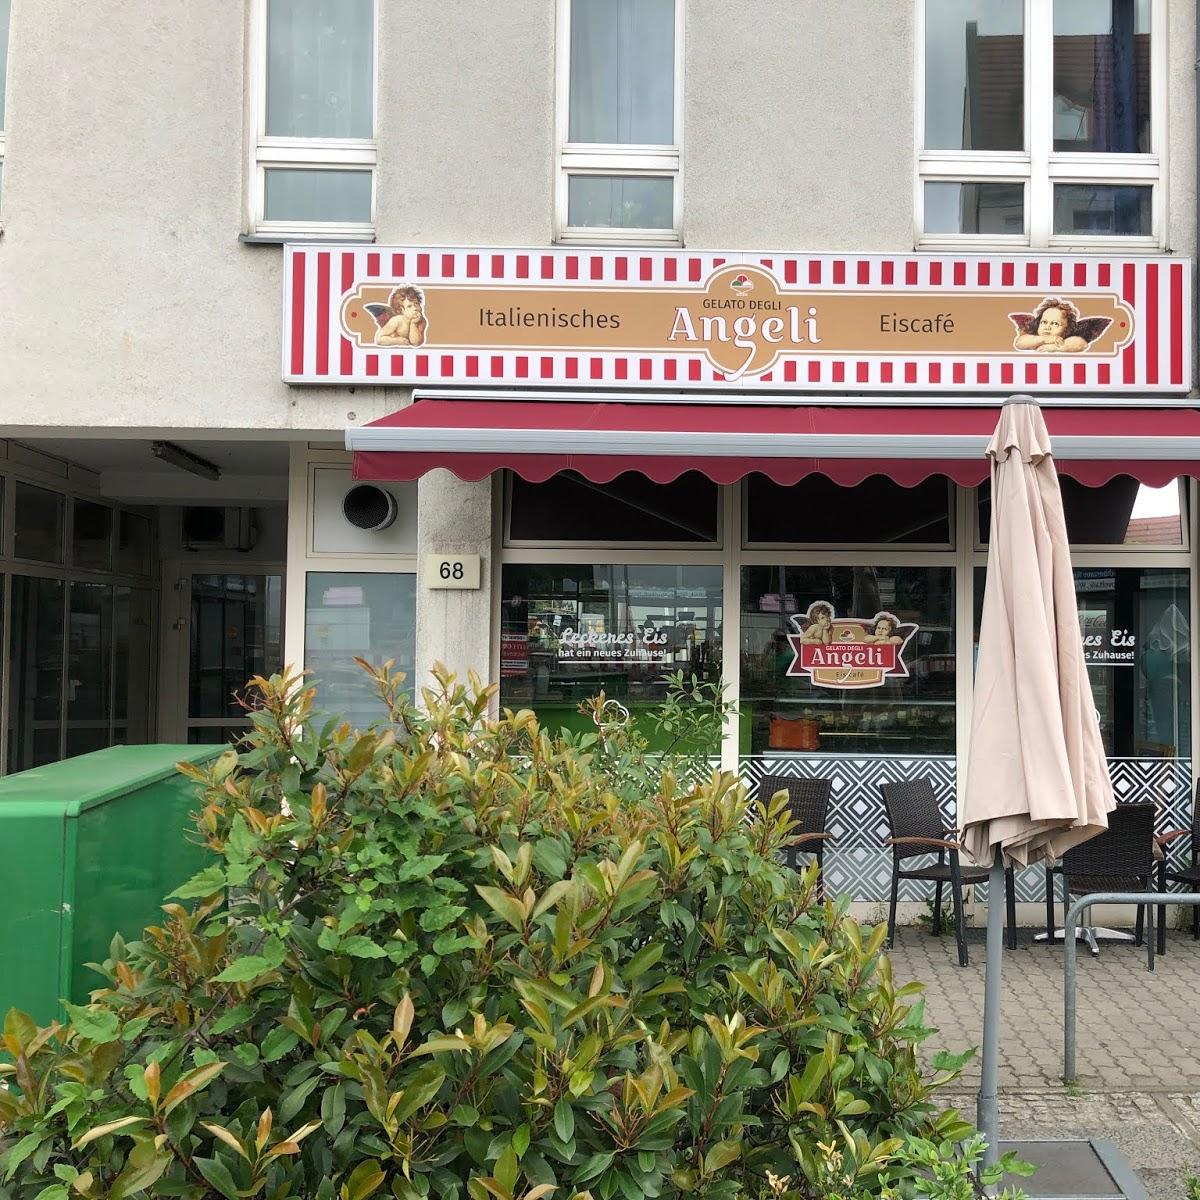 Restaurant "Gelato Degli Angeli Eiscafé" in Berlin